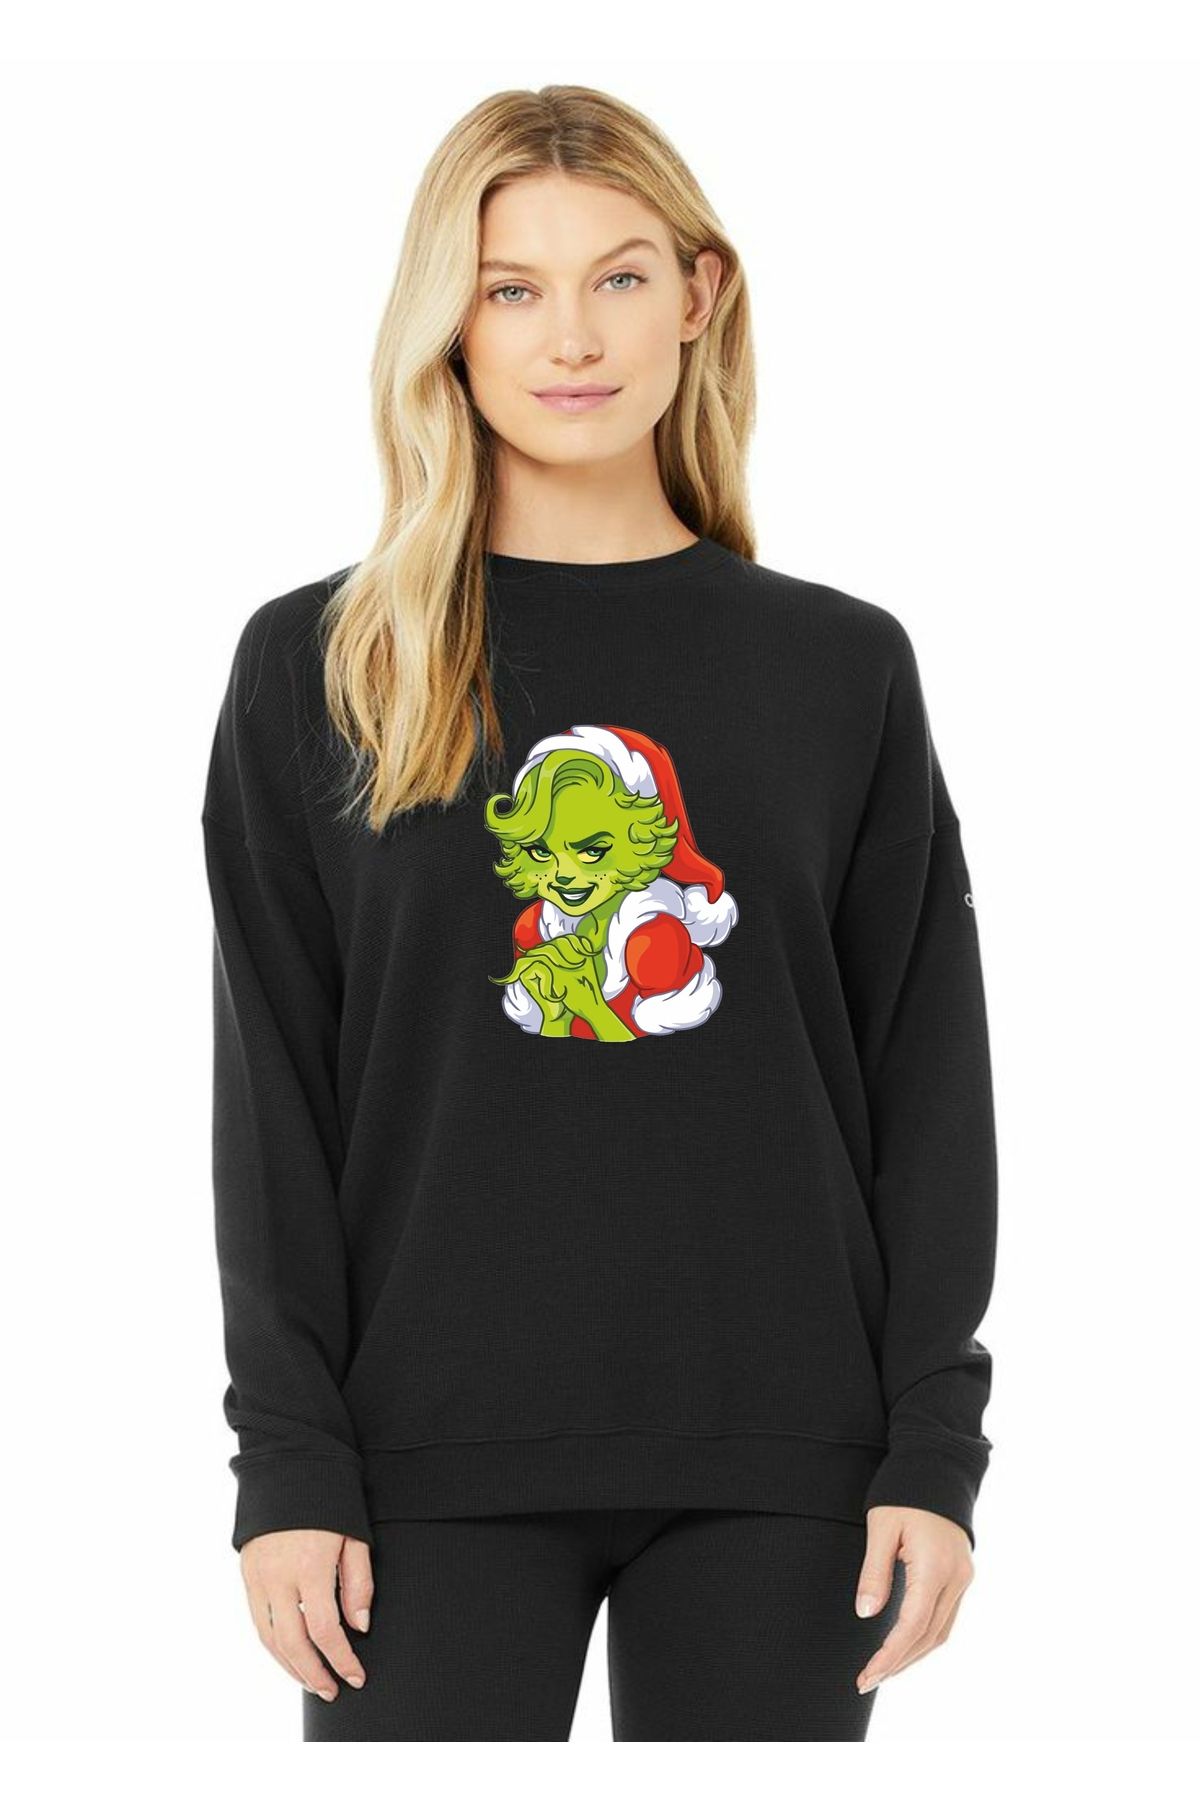 venüsdijital Craiyon Female Grinch Yeni Yıl Christsmas Sweatshirt